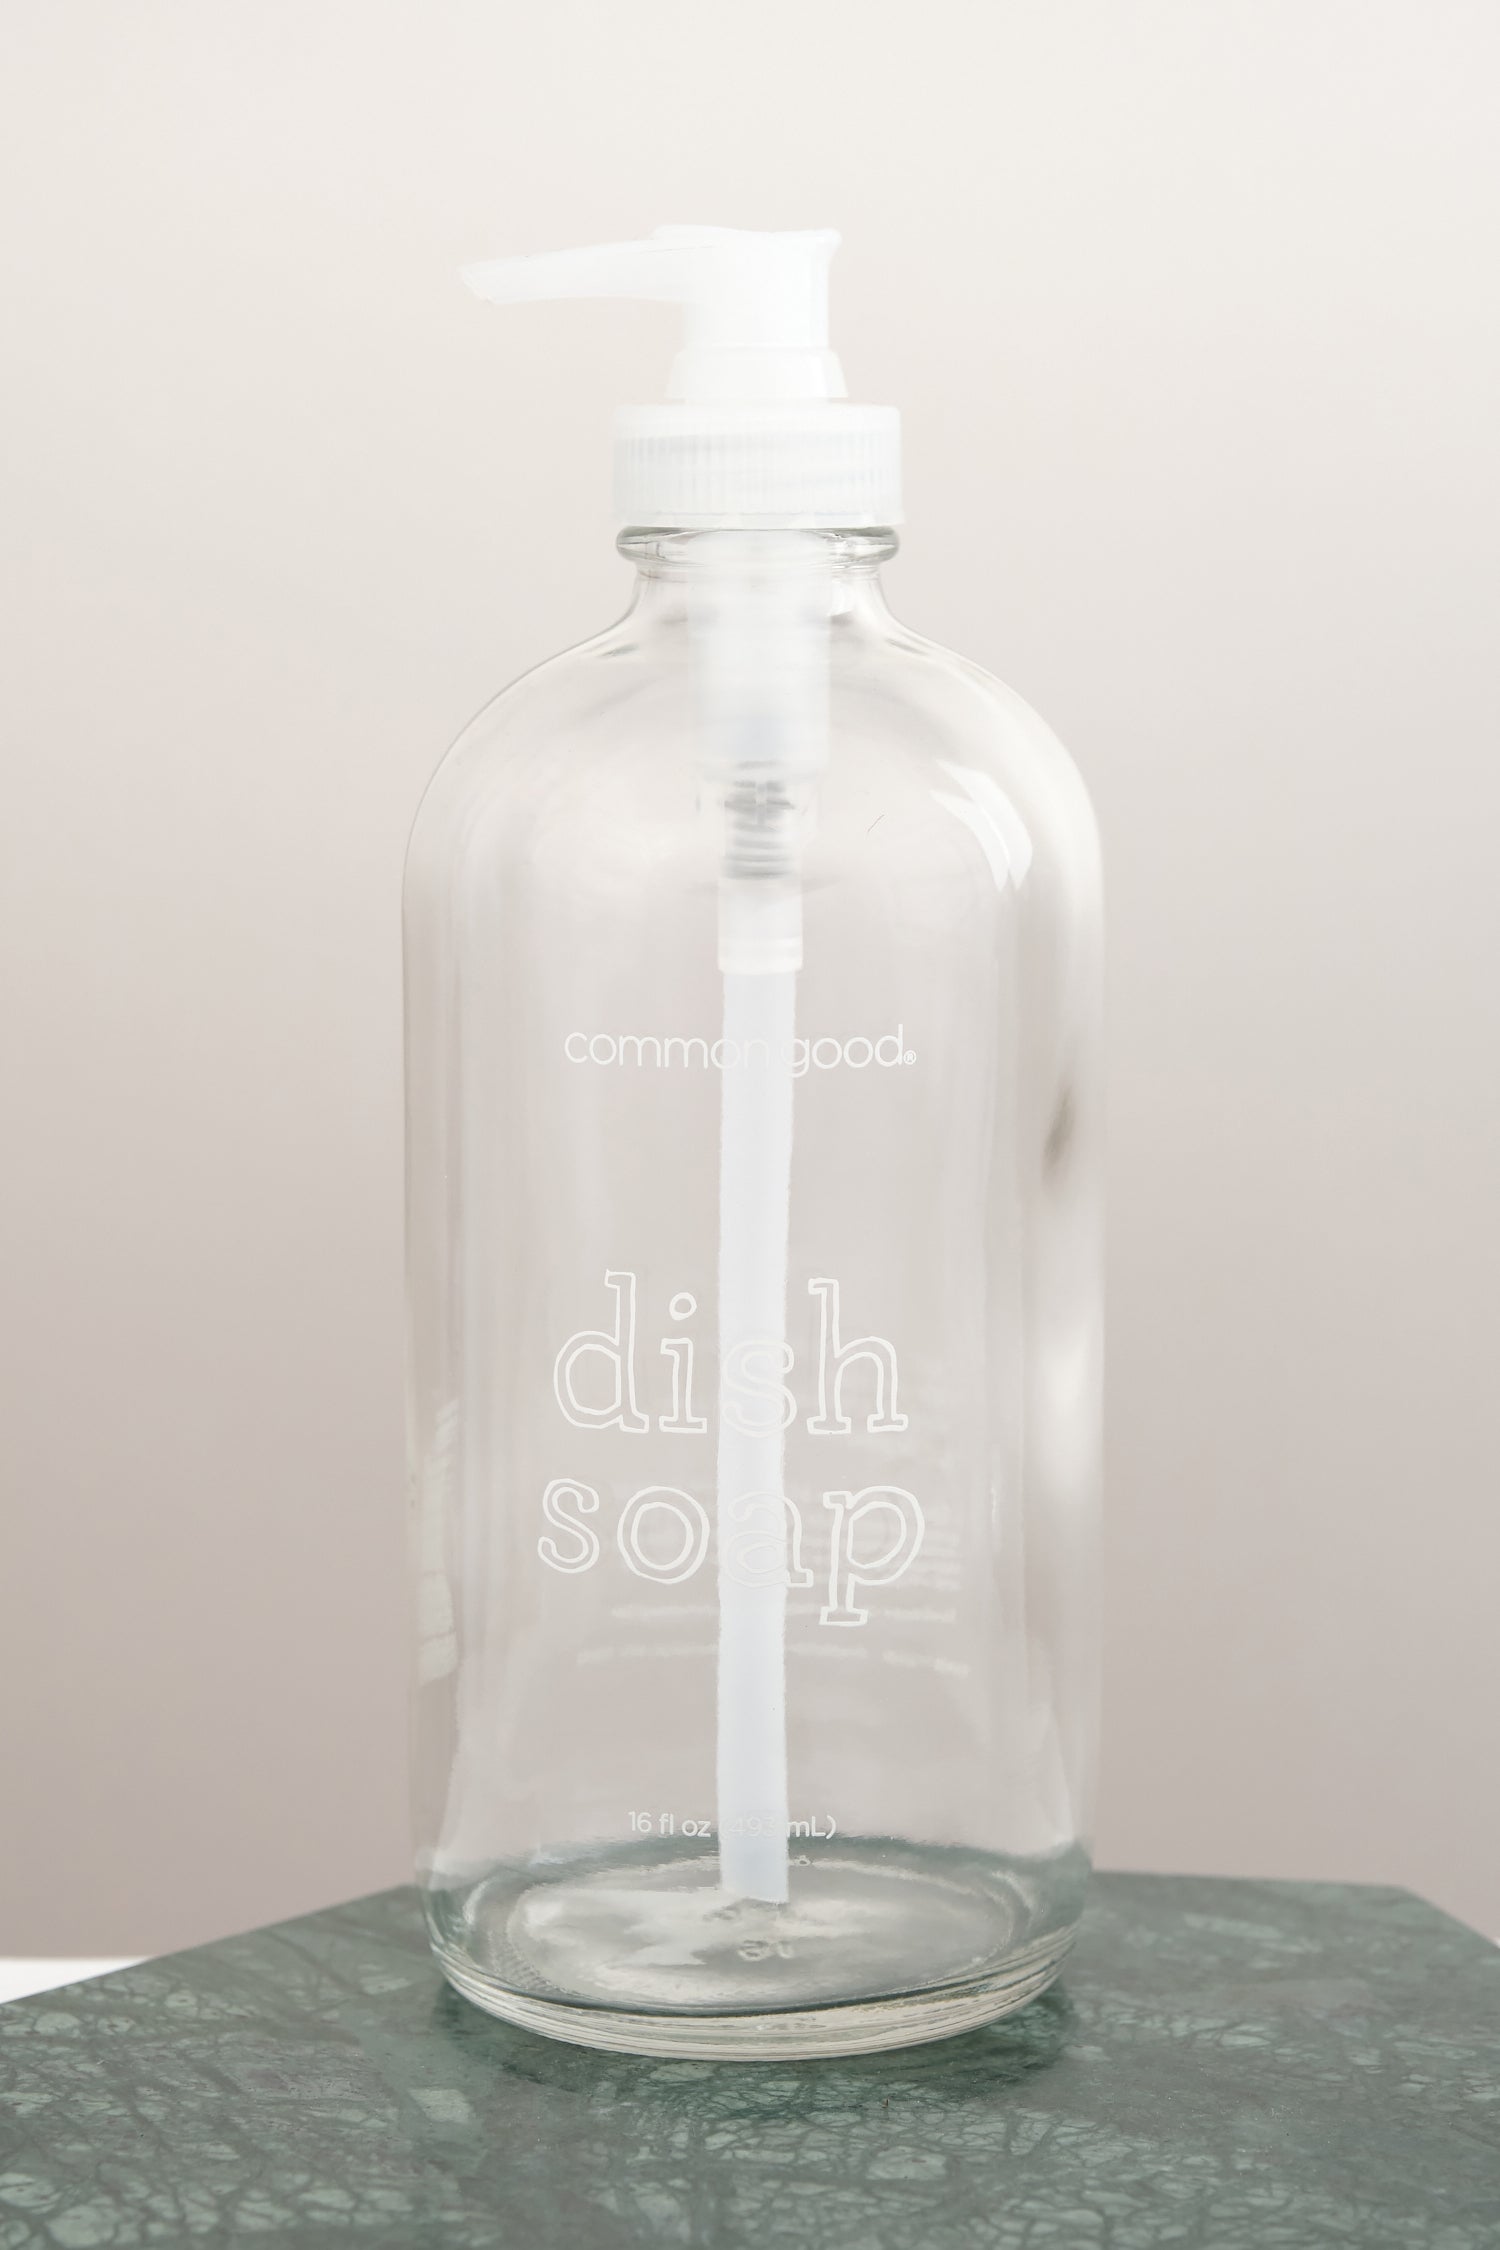 Dish soap bottle